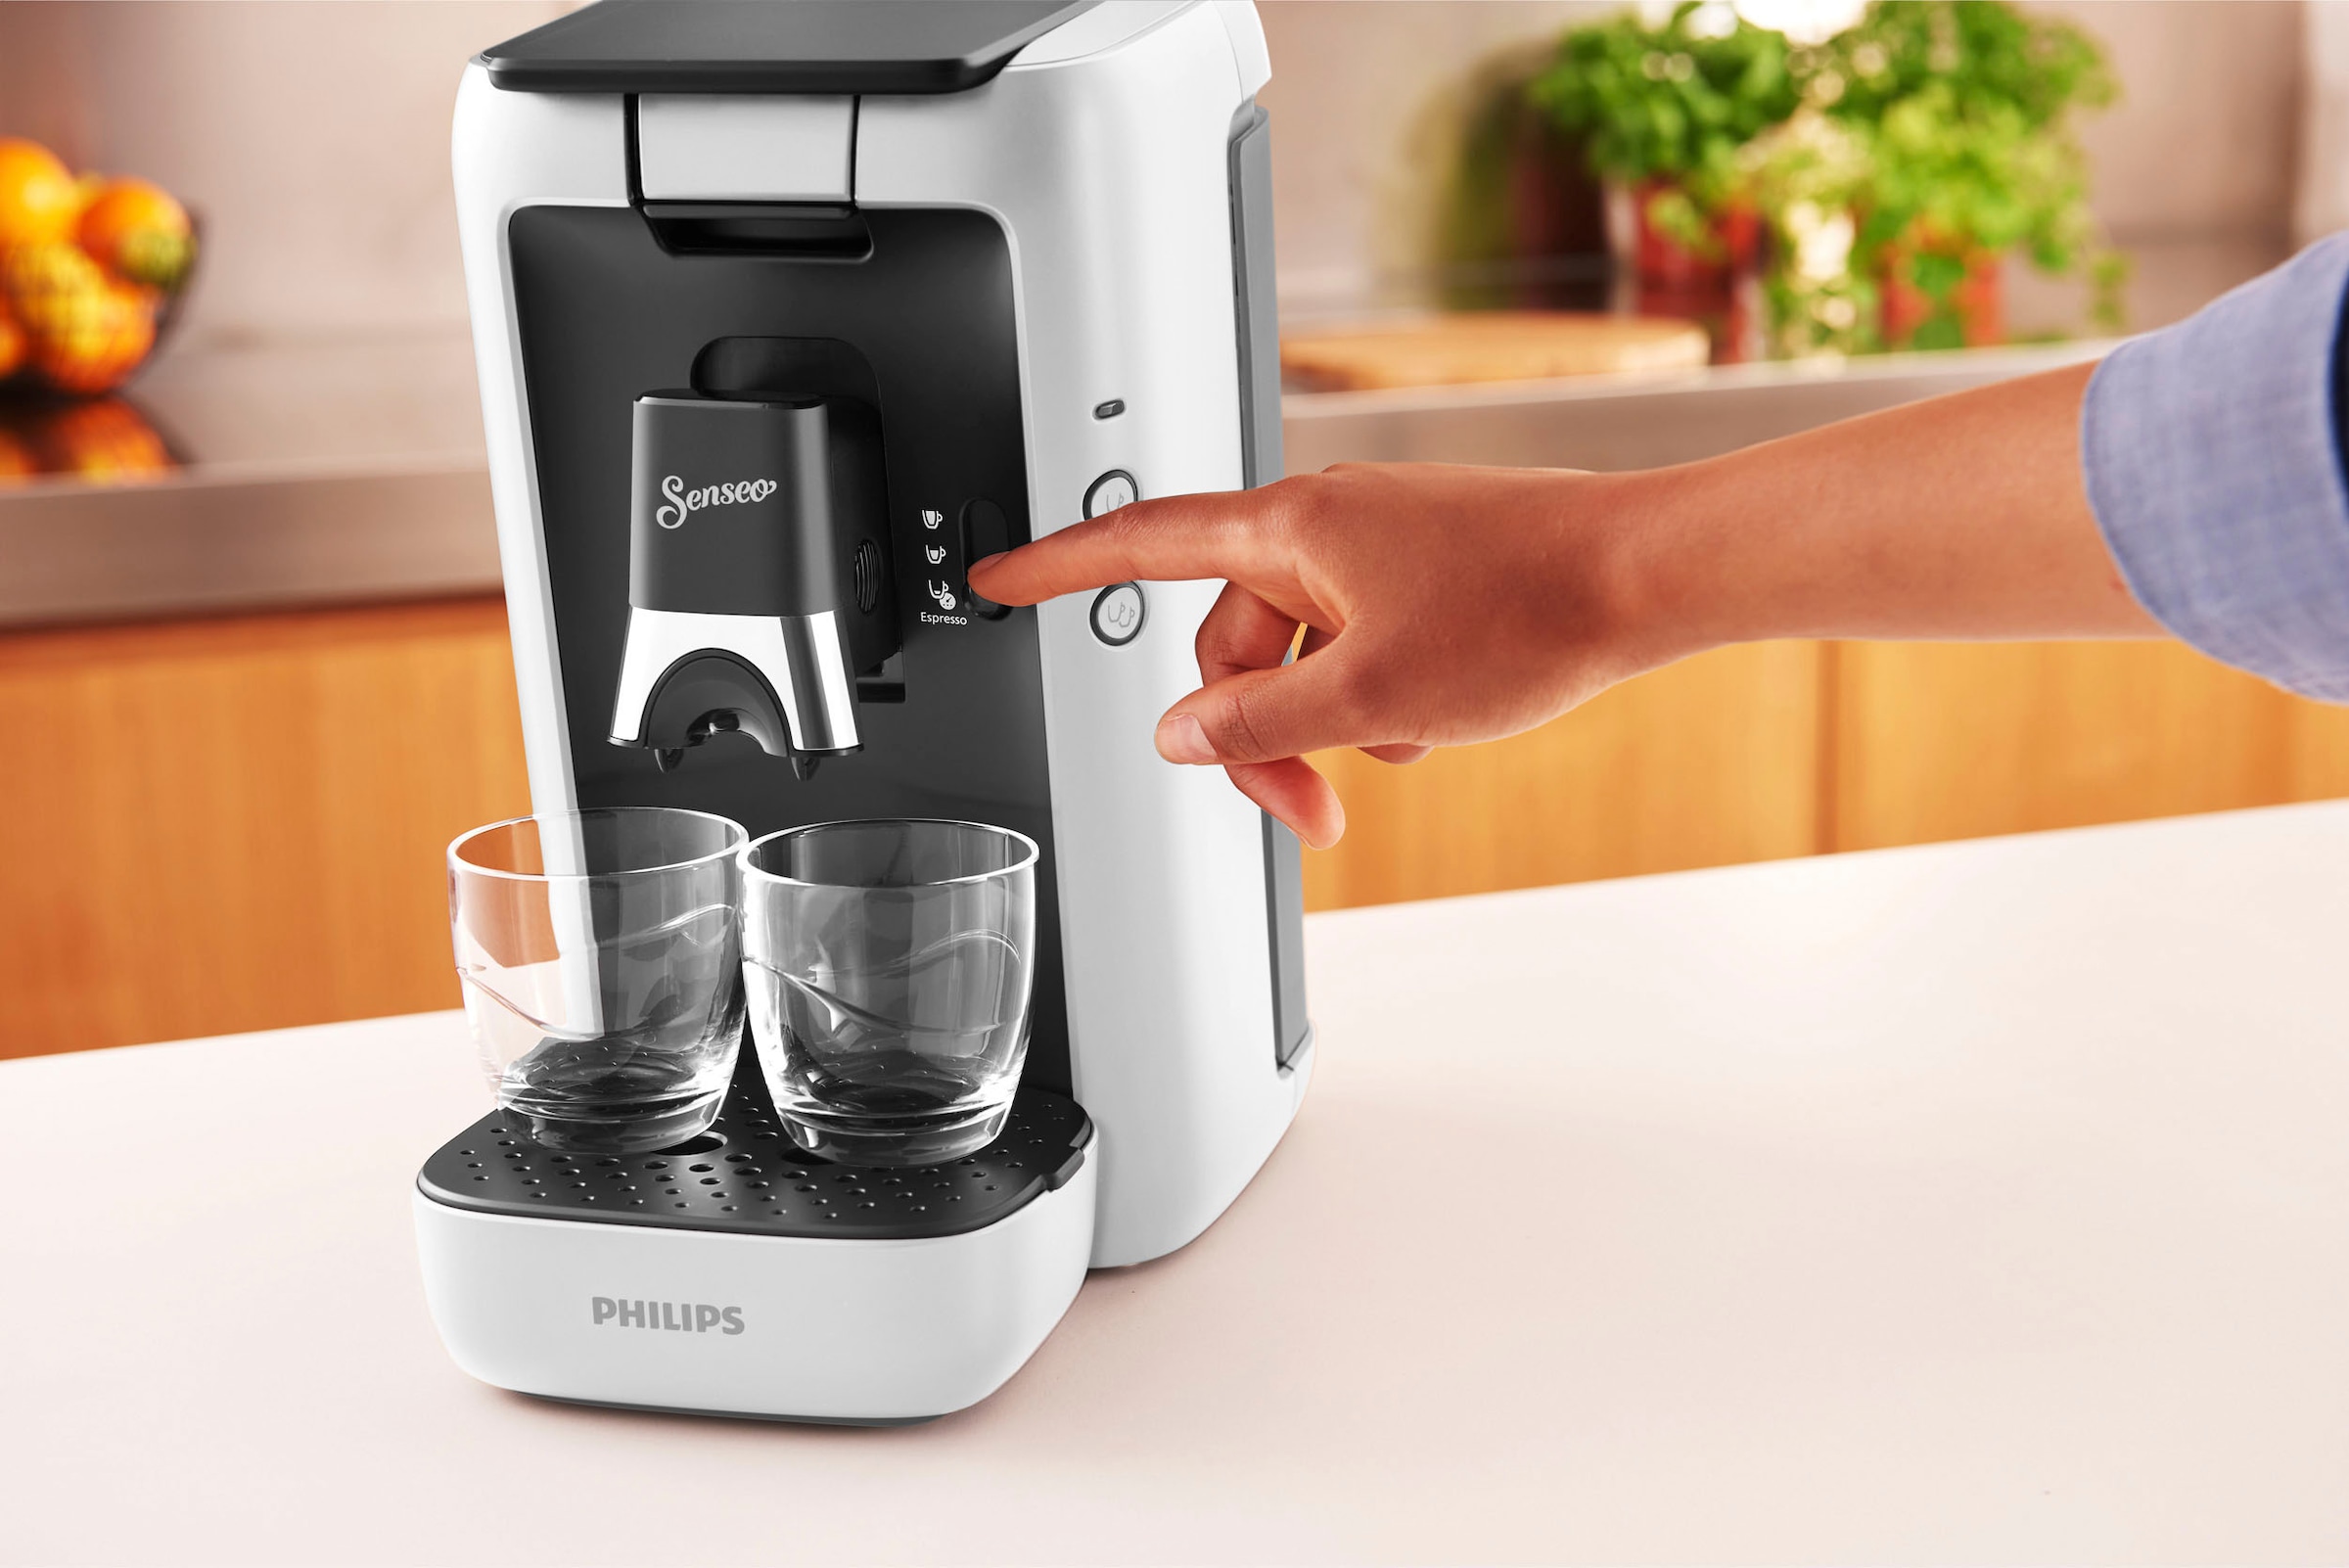 Philips Senseo Kaffeepadmaschine »Maestro CSA260/10, aus 80% recyceltem Plastik, +3 Kaffeespezialitäten«, Memo-Funktion, inkl. Gratis-Zugaben im Wert von € 14,- UVP